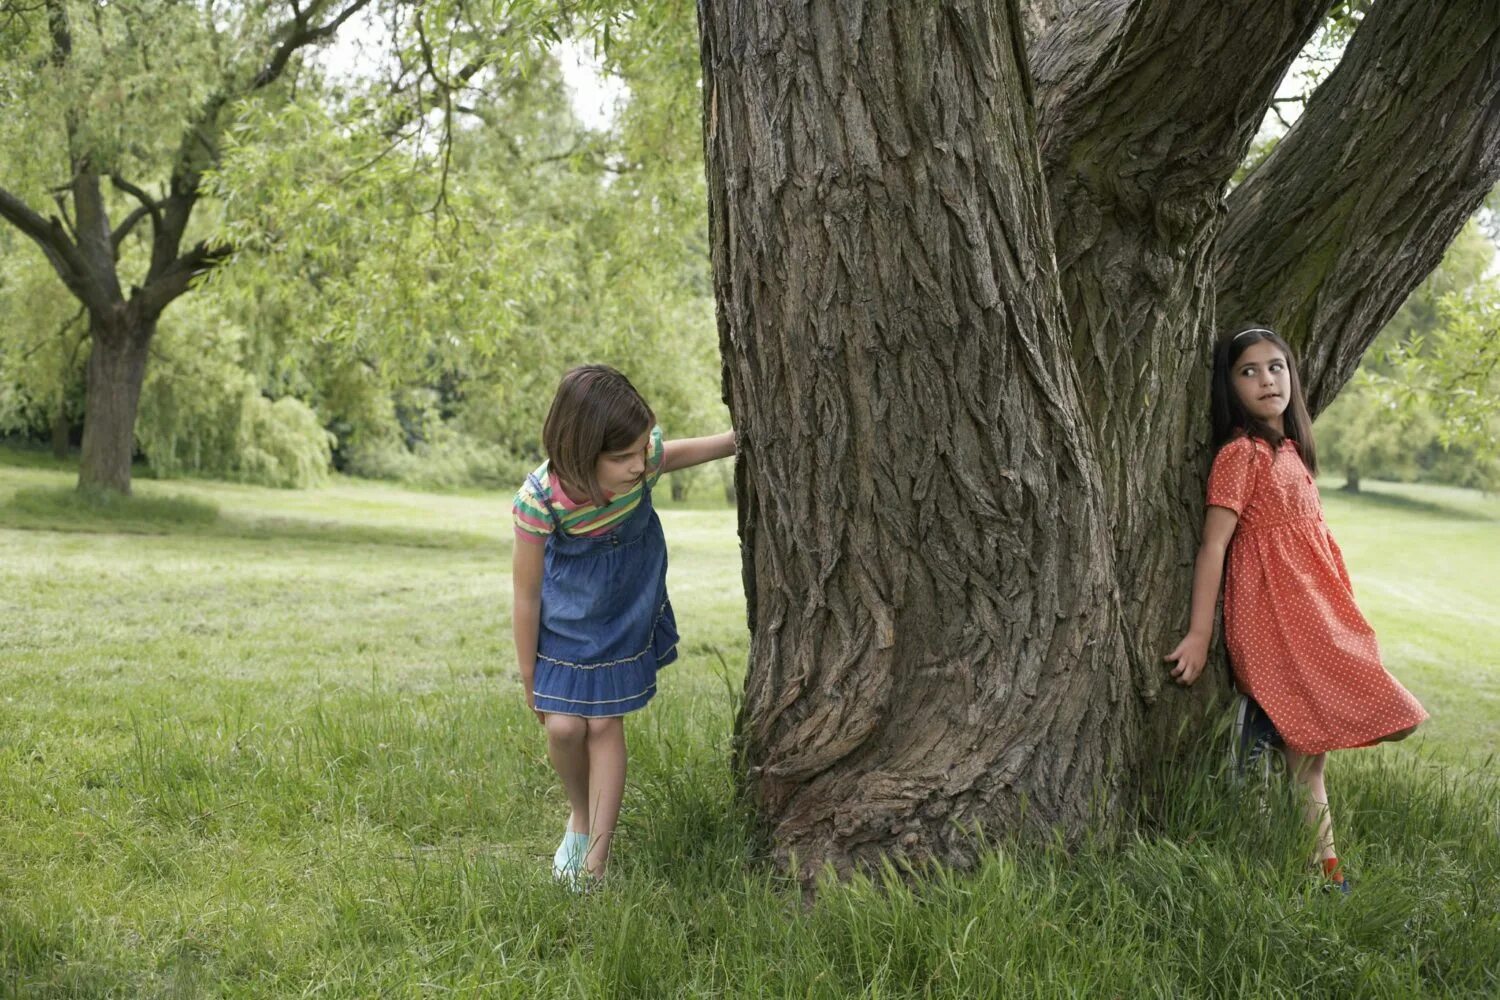 Включи папа прятки. Девочка за деревом. Девочка прячется за деревом. Человек прячется за деревом. "ПРЯТКИ".